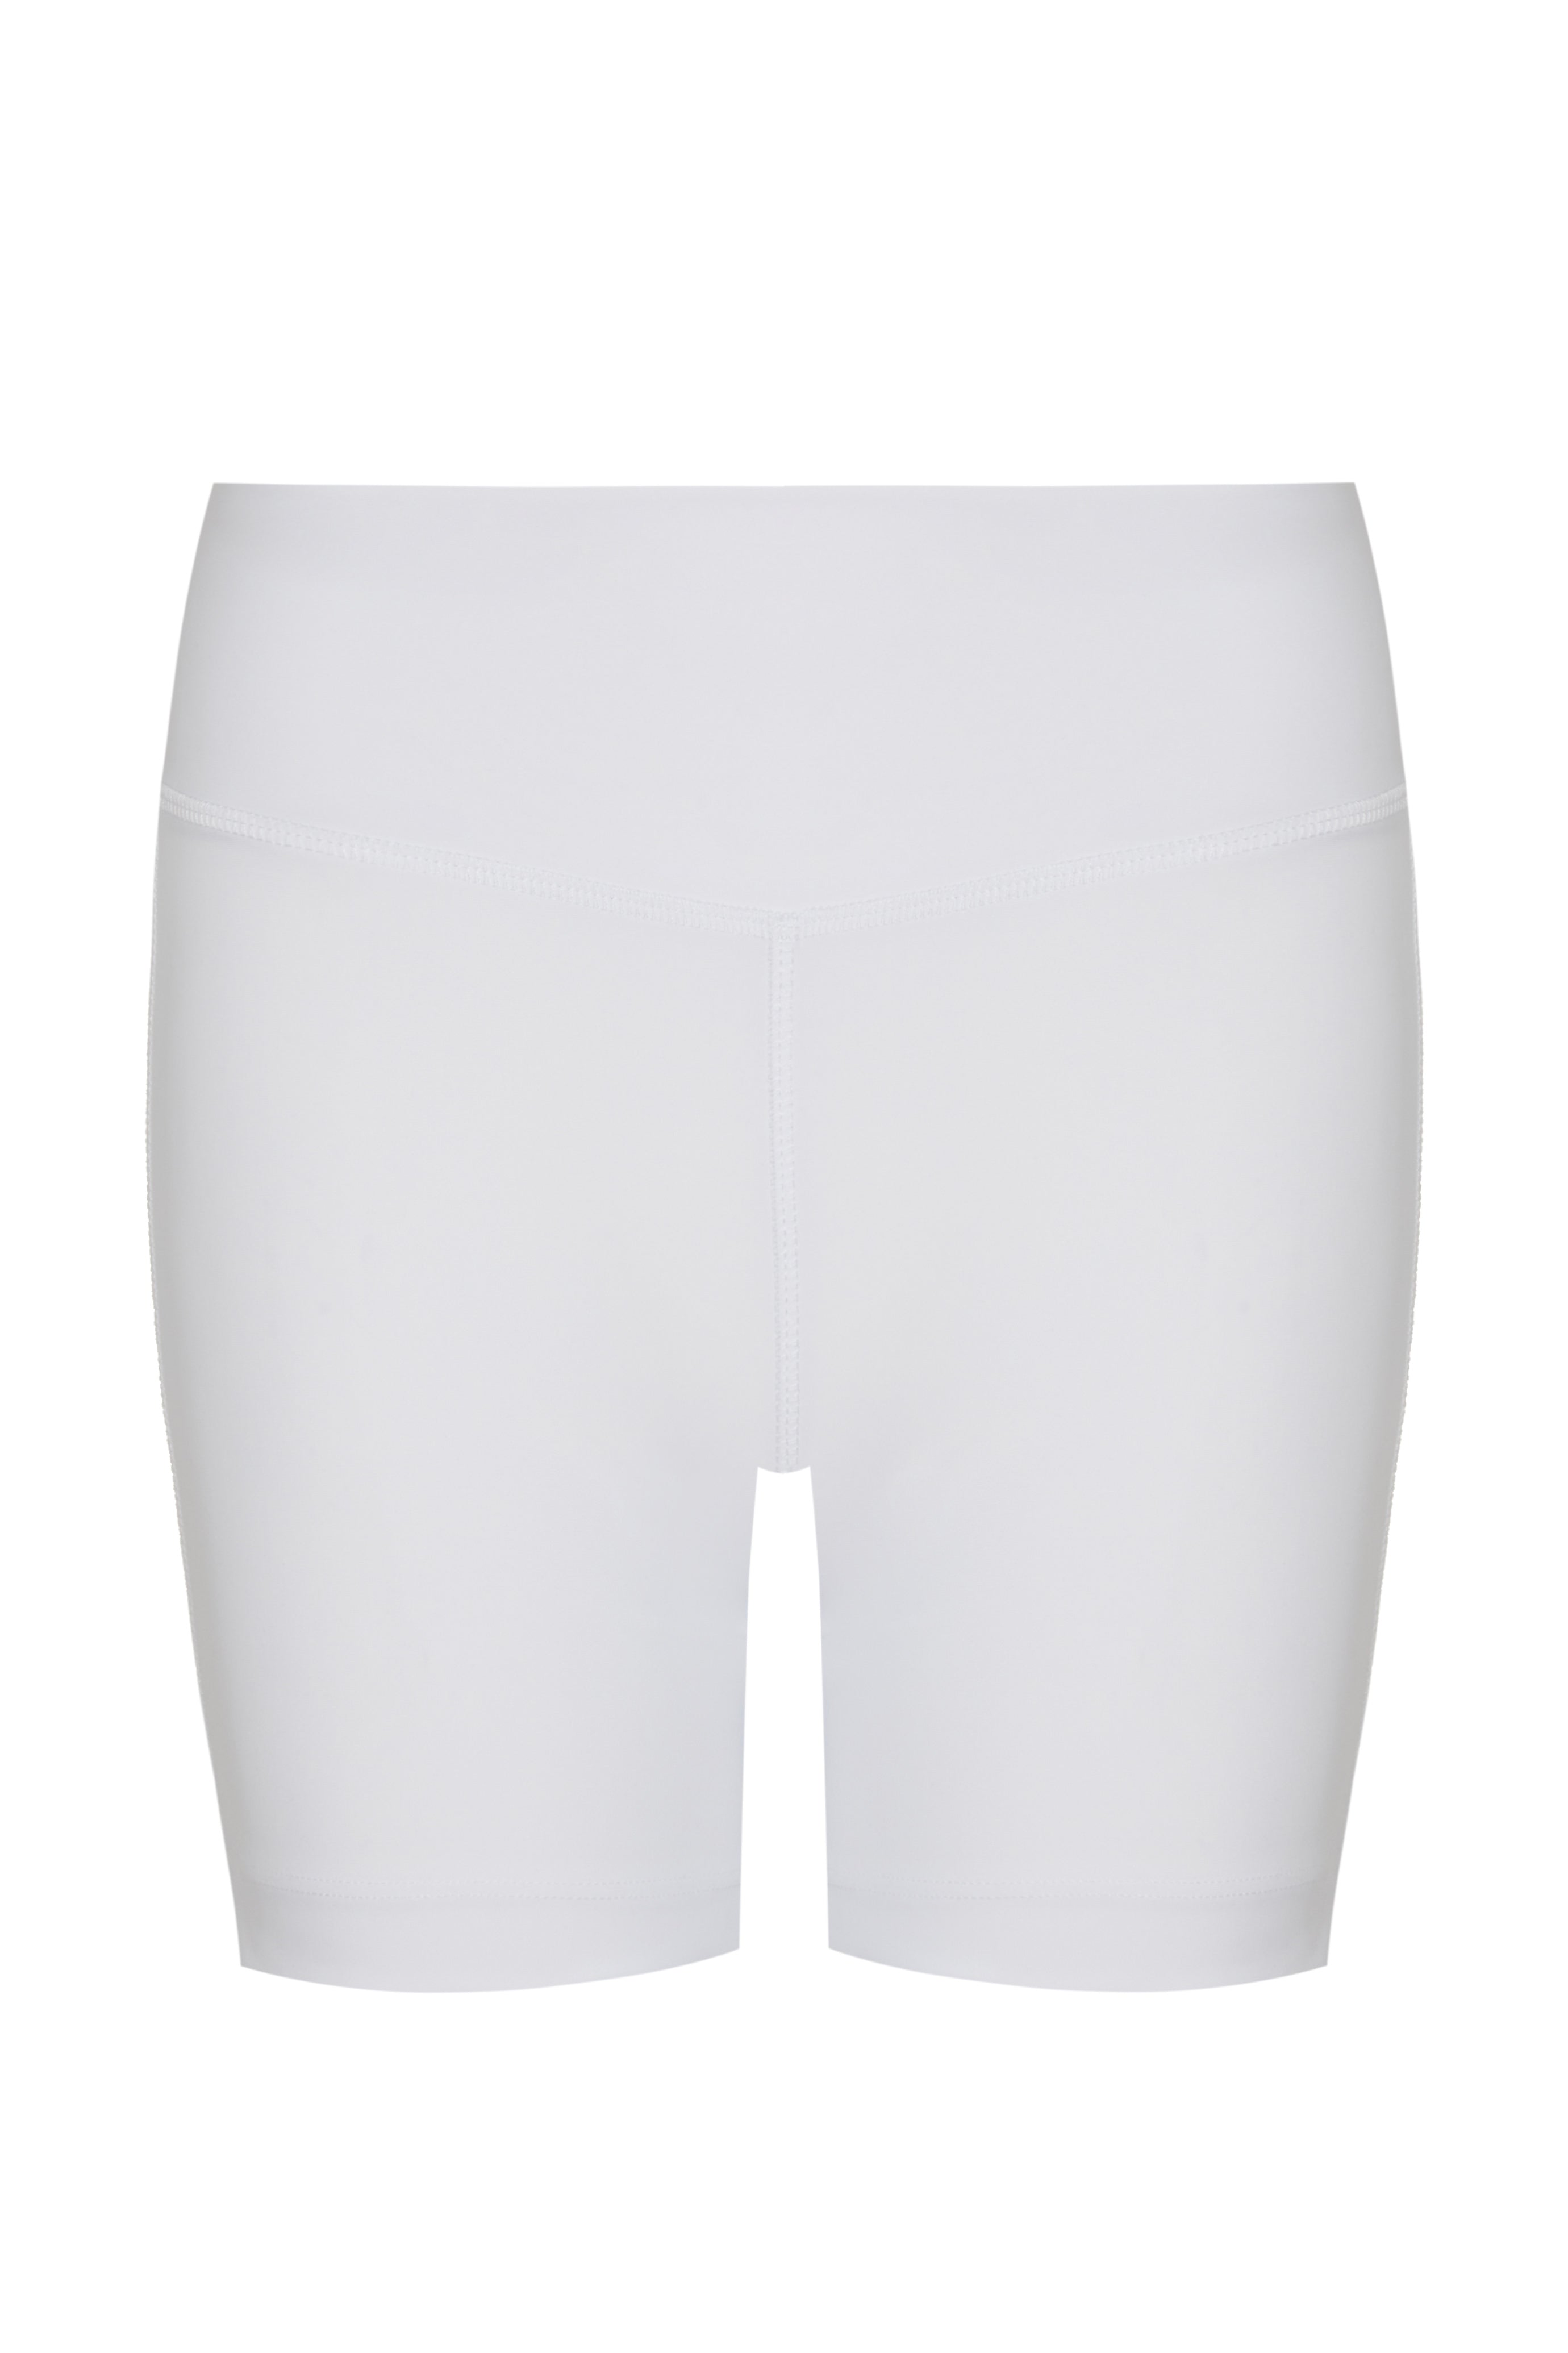 WOMENS CLASSIC WHITE TENNIS DRESS - JAGUAR DRESS JUPP SPORT – jupp-sport